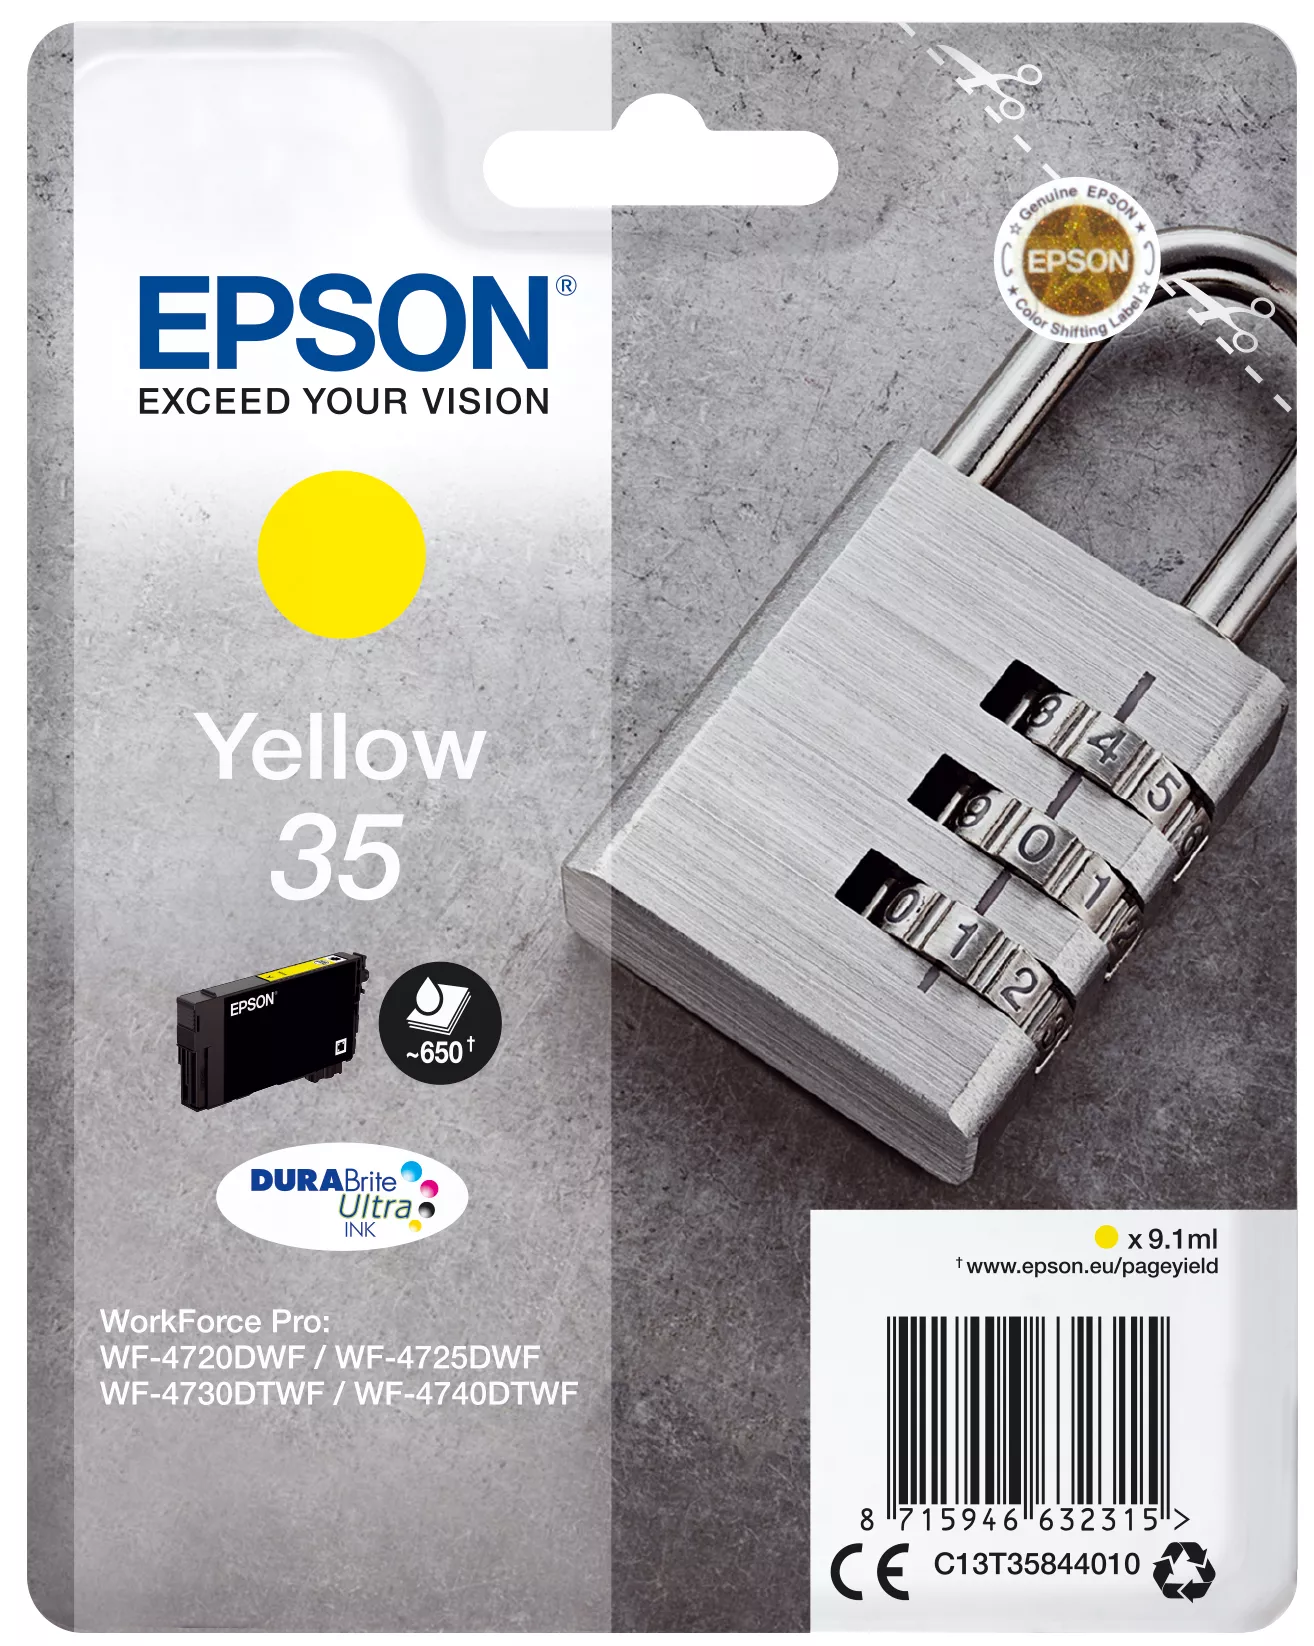 Vente EPSON 35 Ink Yellow 9.1ml Blister au meilleur prix